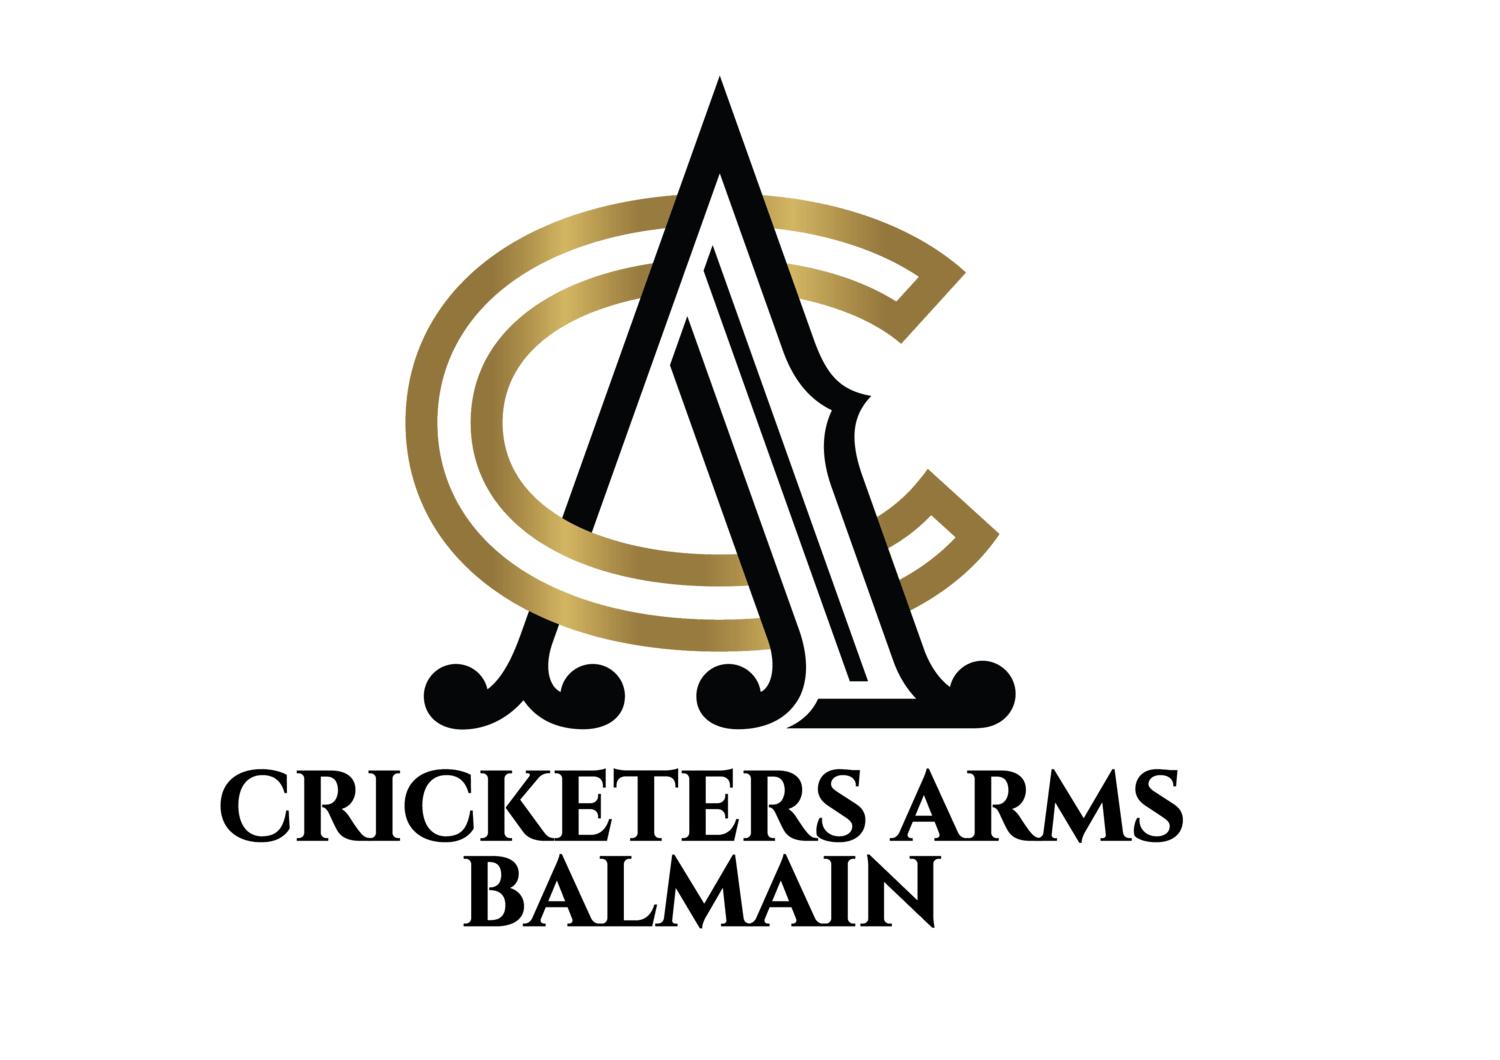 Balmain Transparent Logo - The Cricketers Arms Balmain